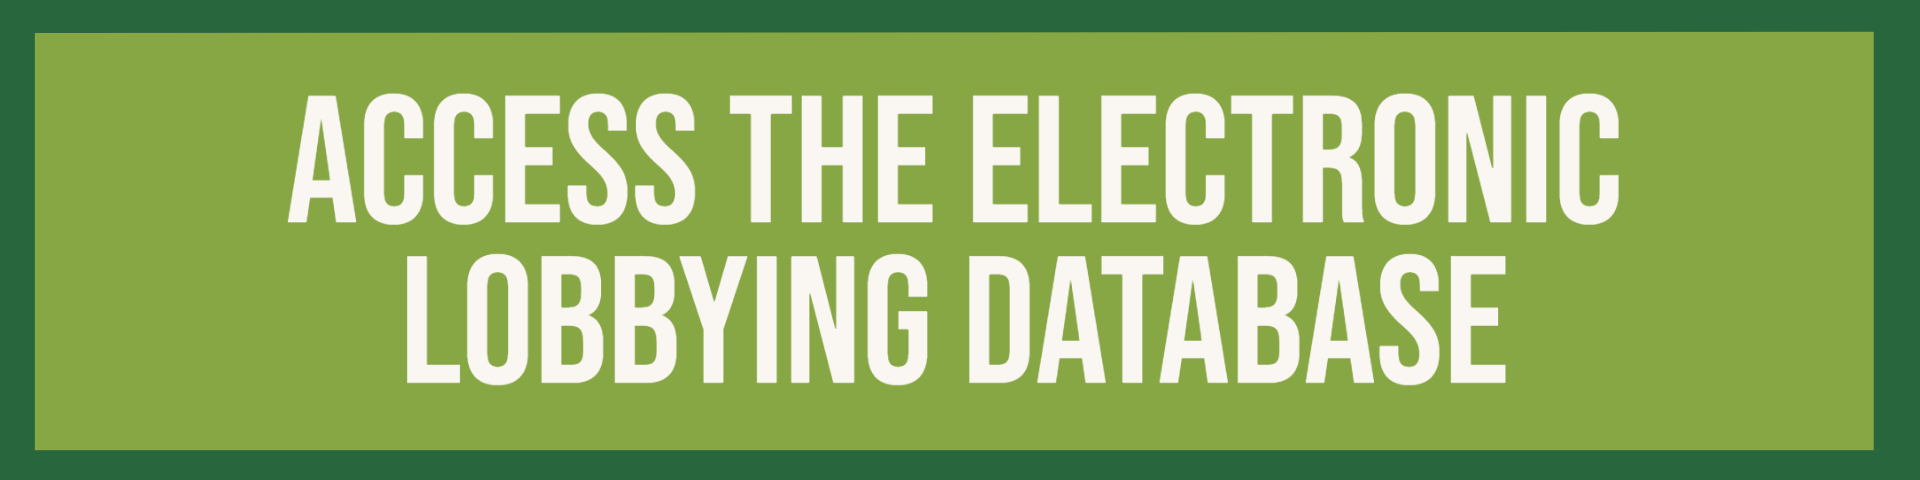 Electronic Lobbying Database